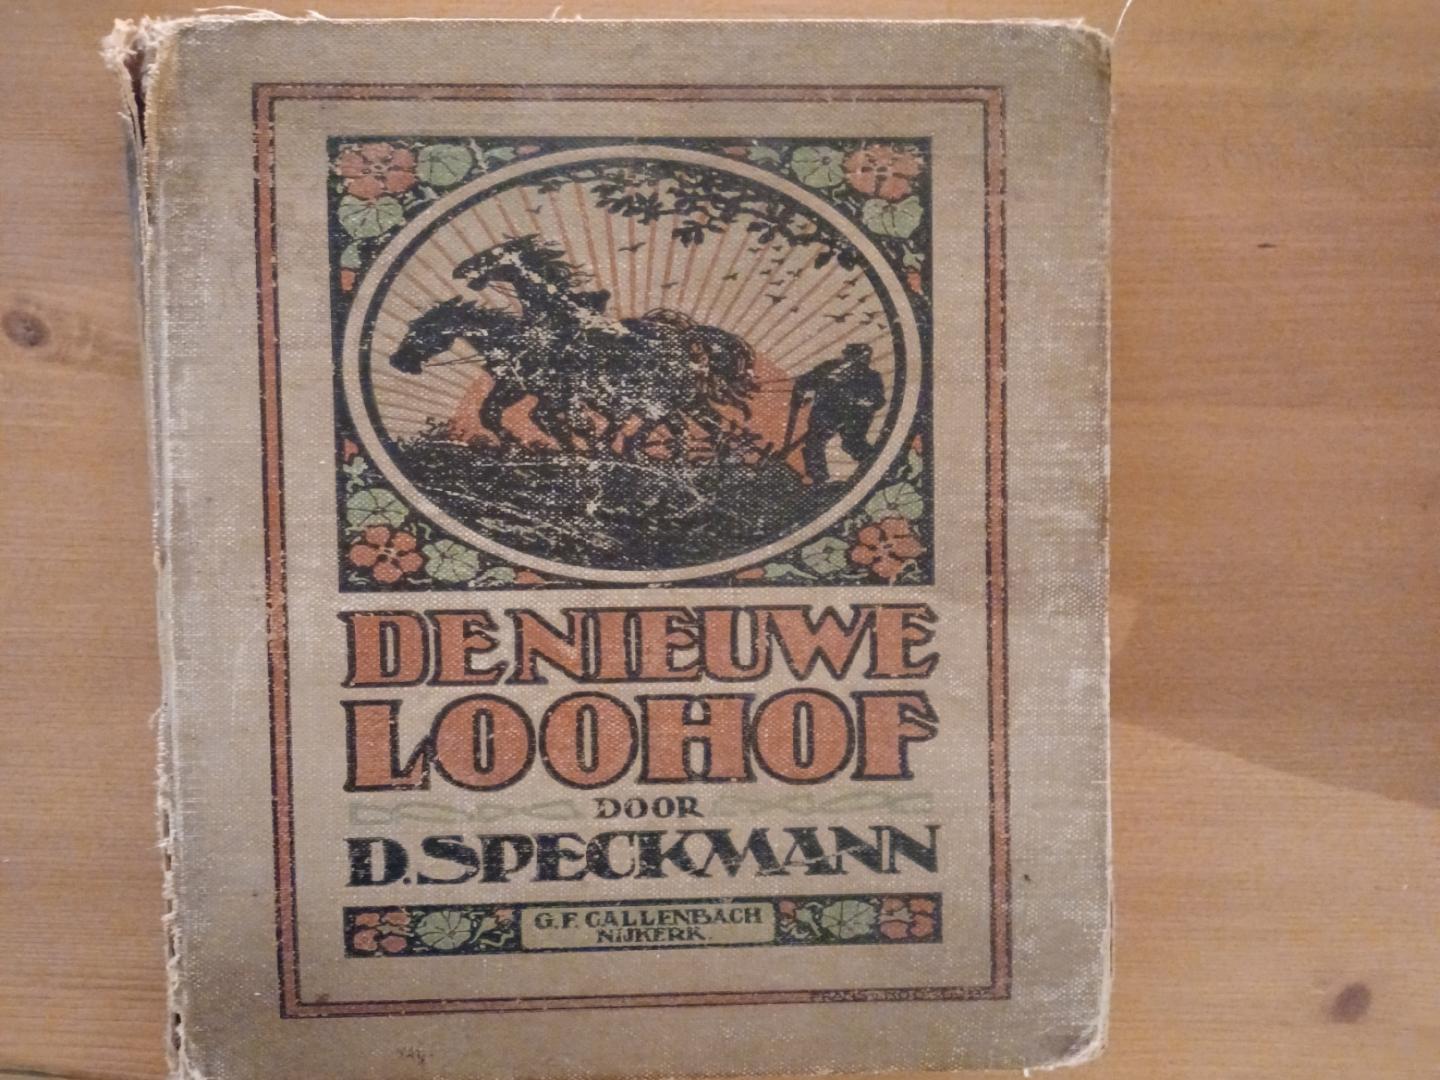 Speckmann, D. - De nieuwe Loohof